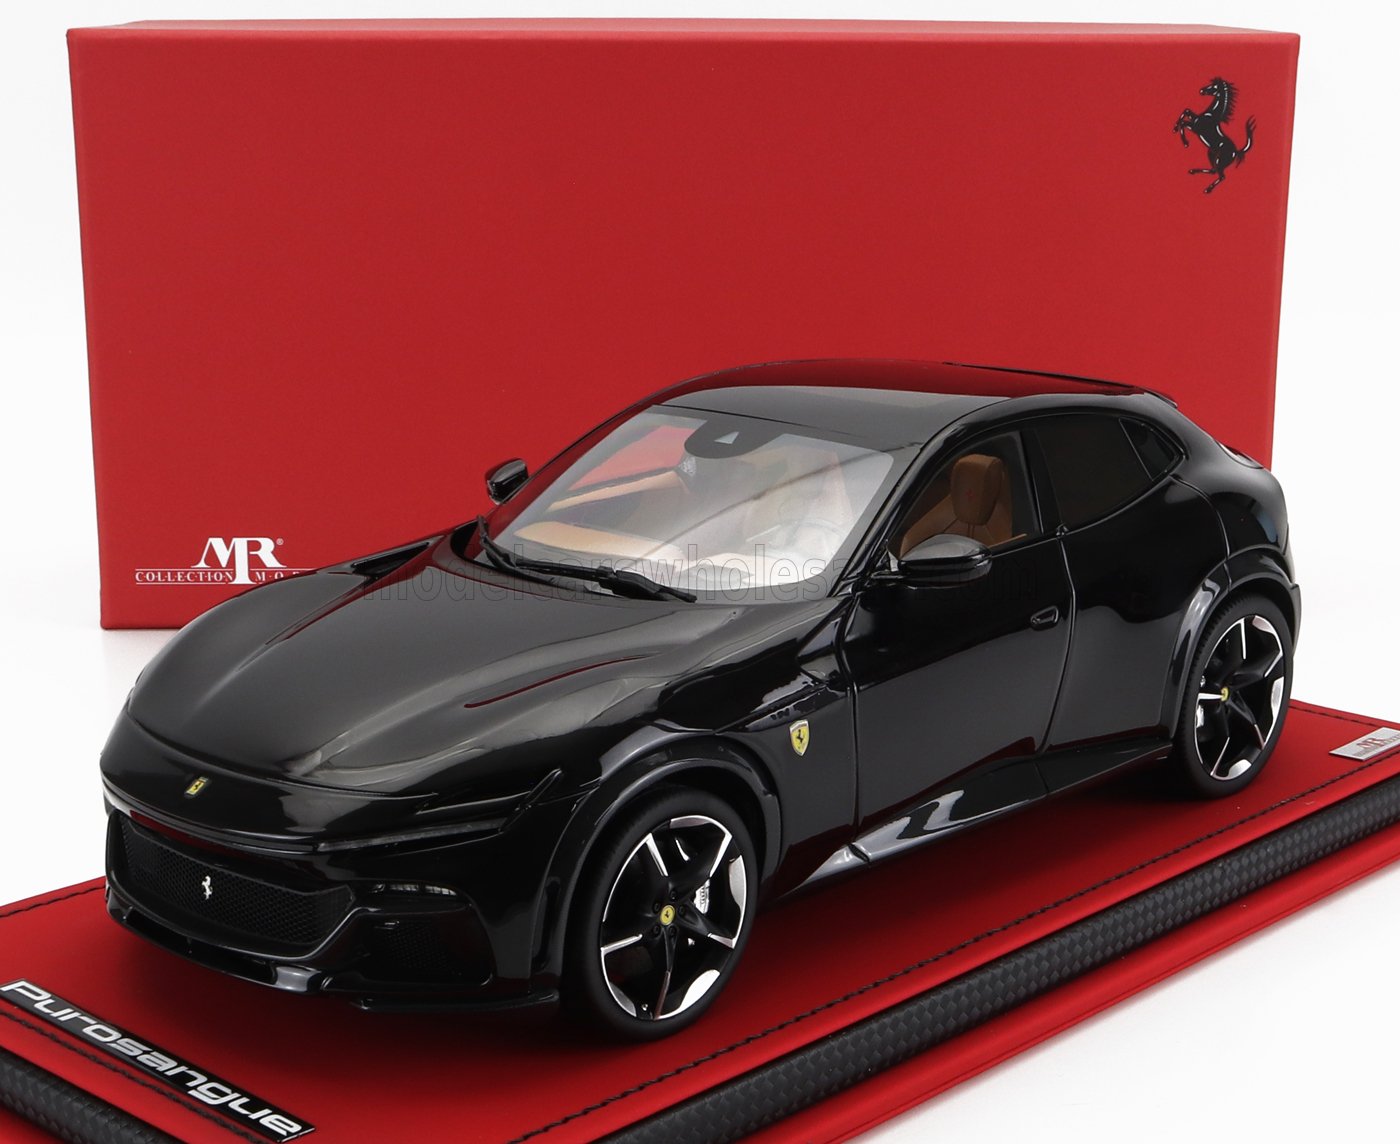 2023 Ferrari Purosangue First Look: The SUV That Ferrari Had to Build